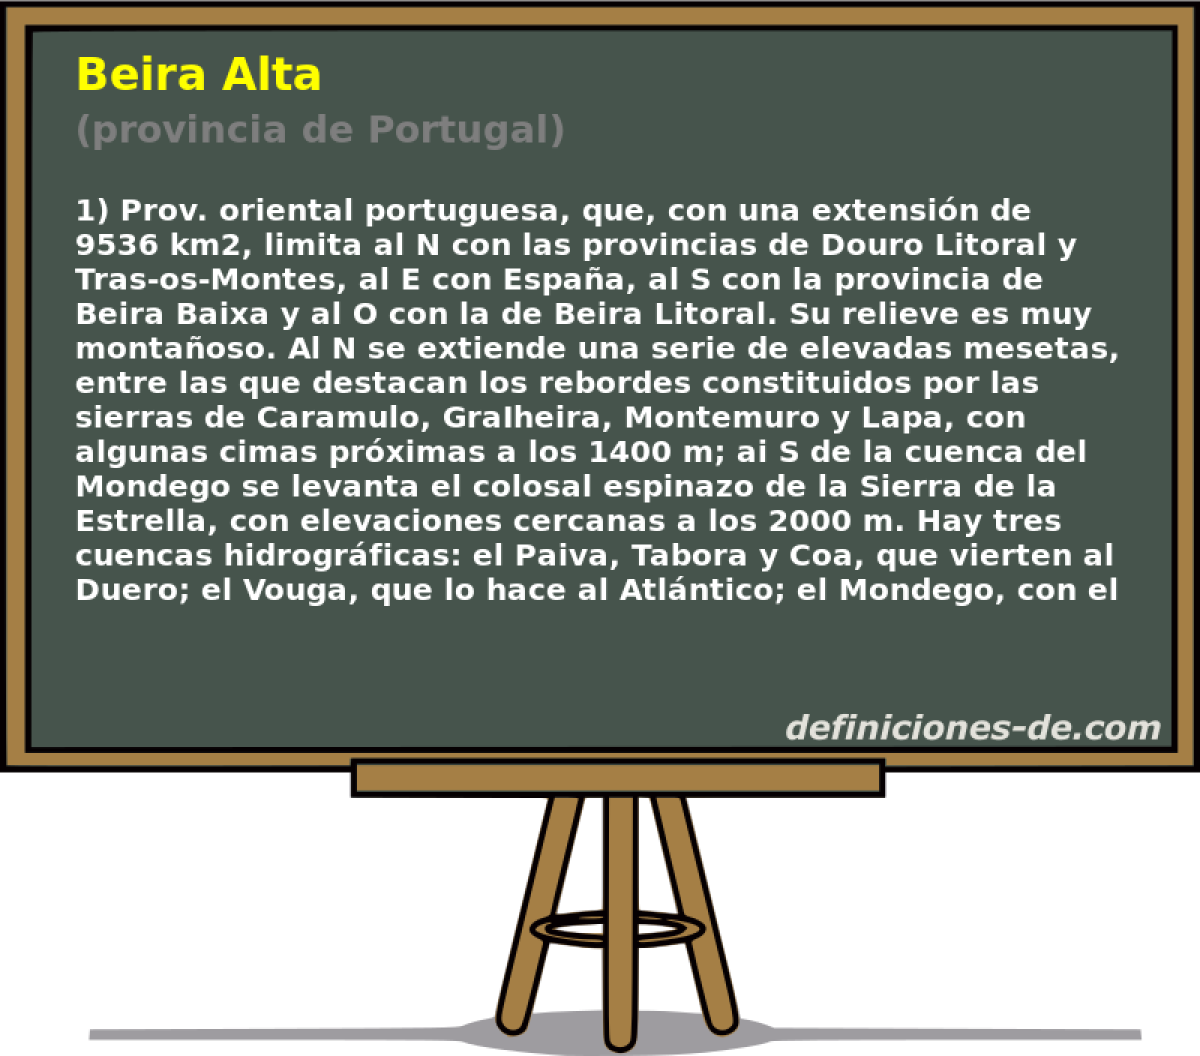 Beira Alta (provincia de Portugal)